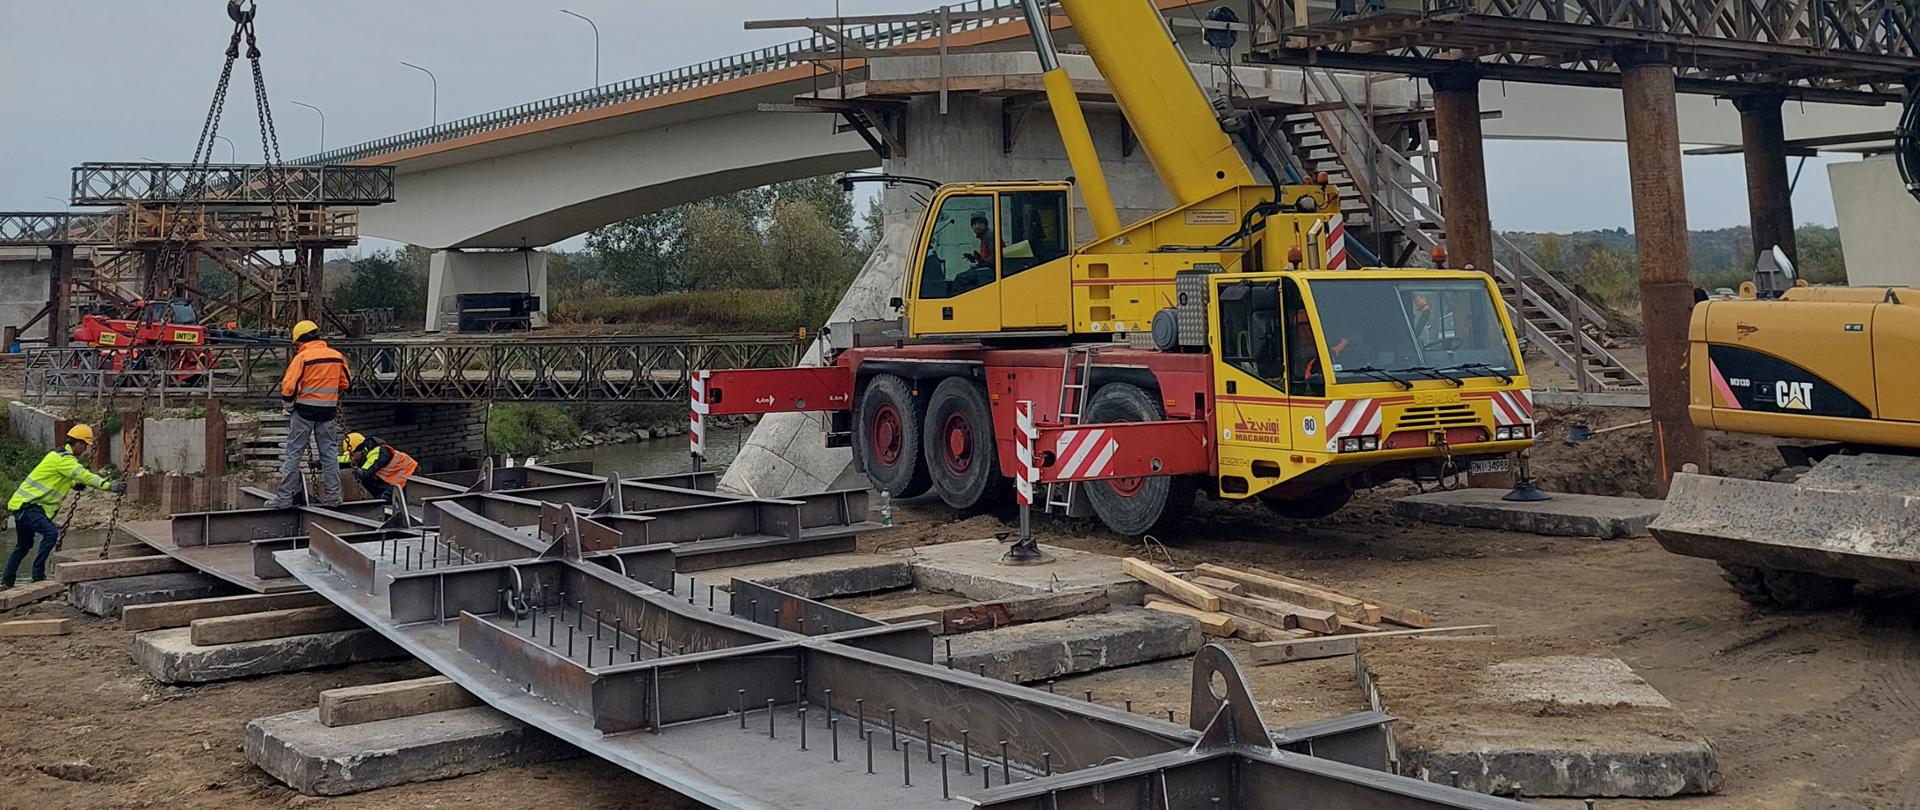 Budowa mostu w Sandomierzu - trzech robotników w kaskach i kolorowych ubraniach ochronnych przygotowuje długi płaski szary stalowy element do przeniesienia przez dźwig. Trwa montaż zaczepów dźwigowych. Z tyłu żółto-czerwony dźwig. W tle drugi most nad rzeką